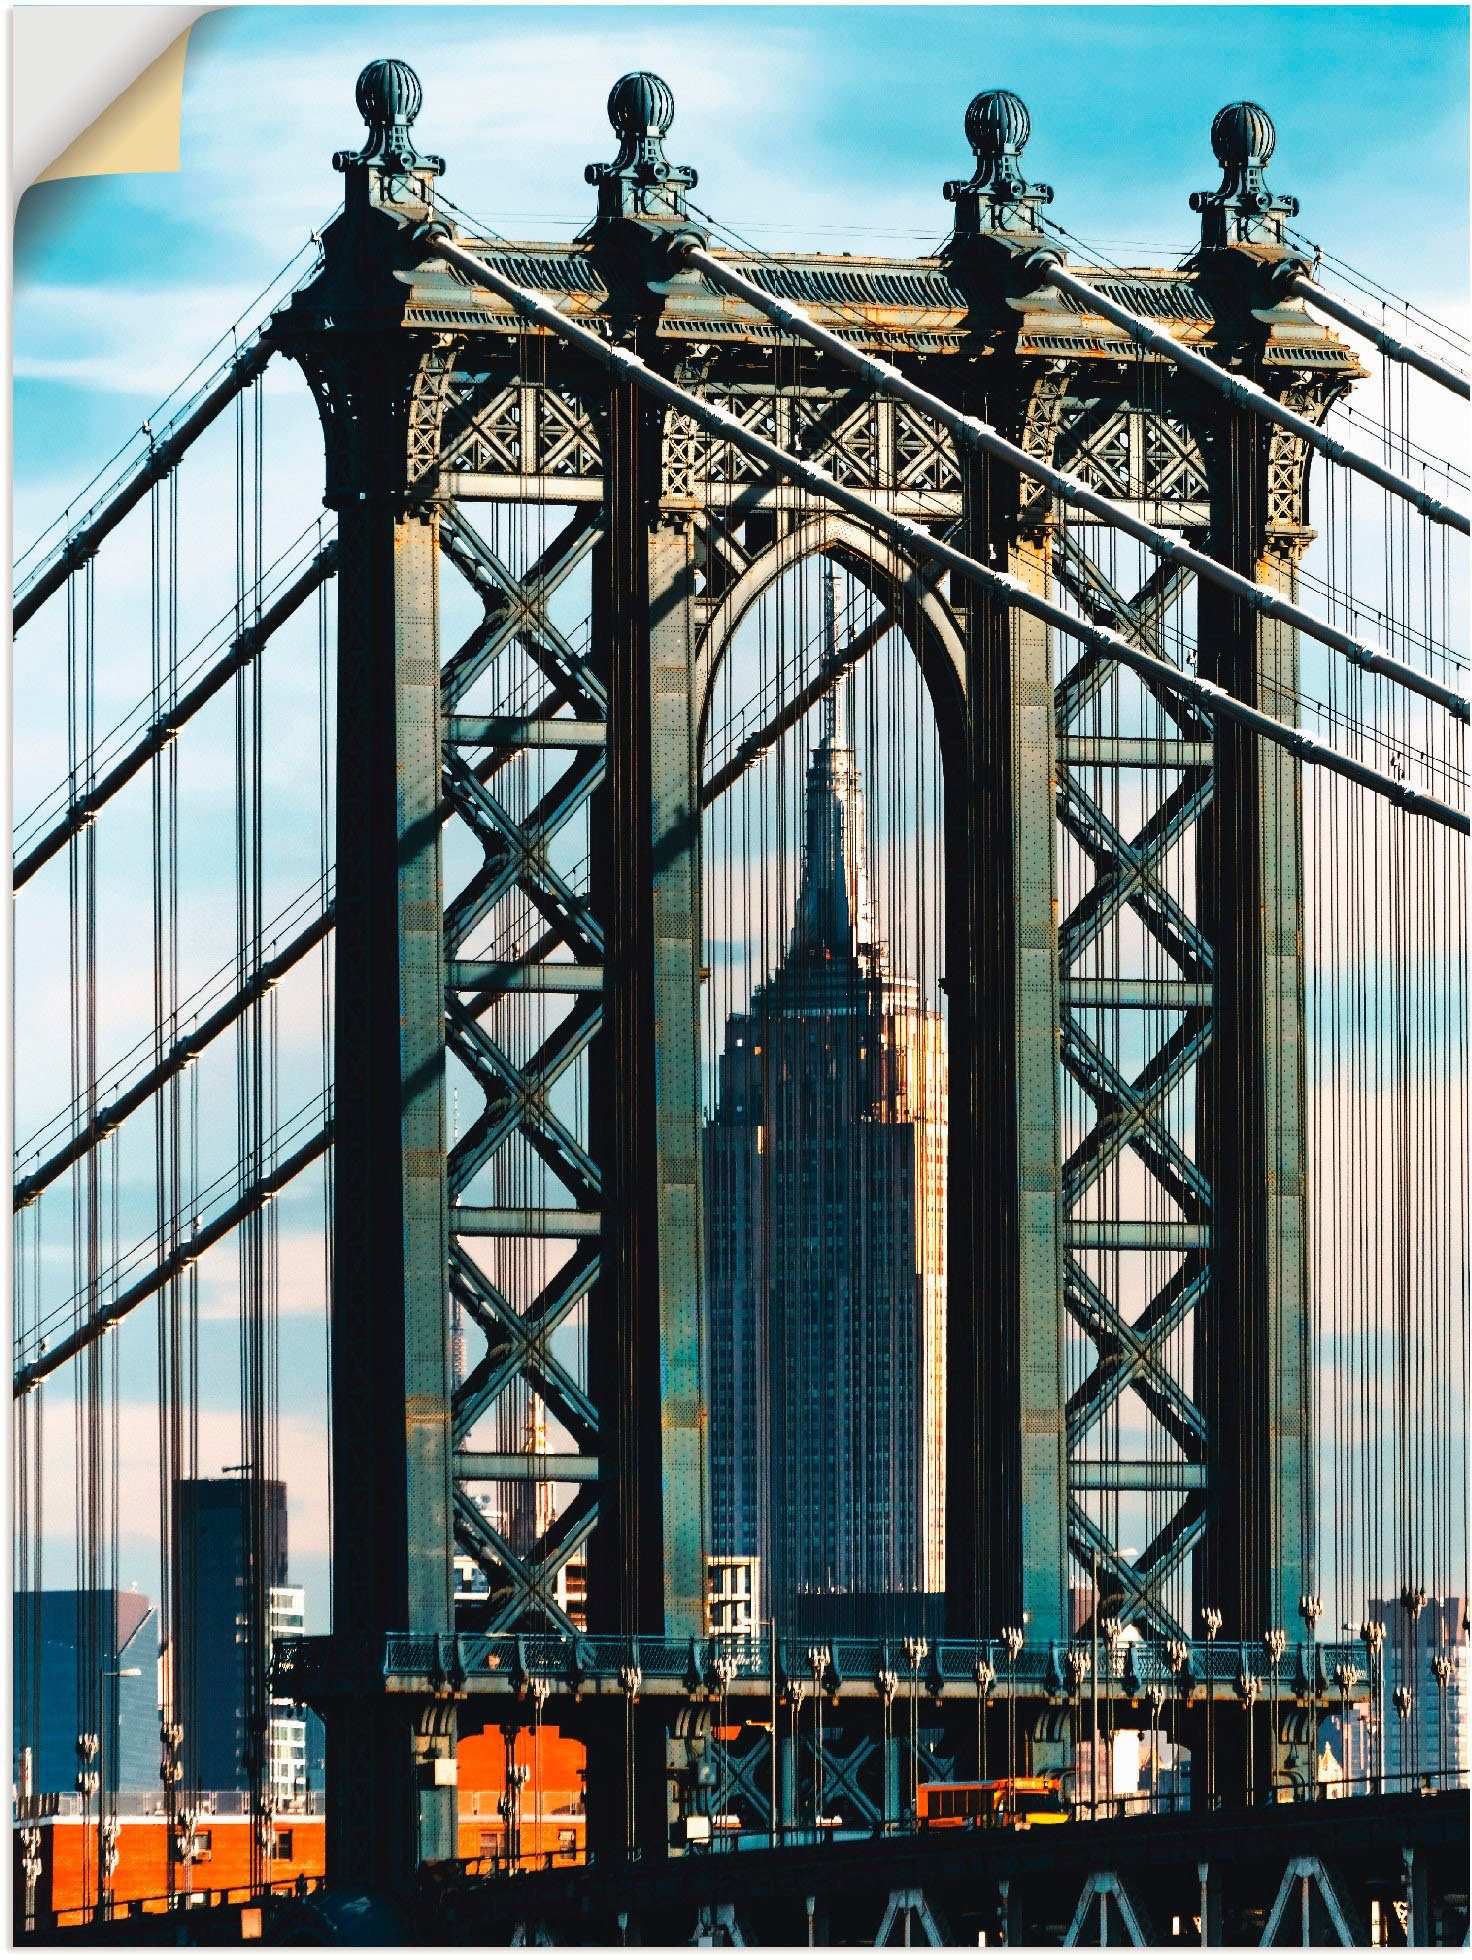 Artland Artprint New York Manhattan Bridge in vele afmetingen & productsoorten -artprint op linnen, poster, muursticker / wandfolie ook geschikt voor de badkamer (1 stuk)